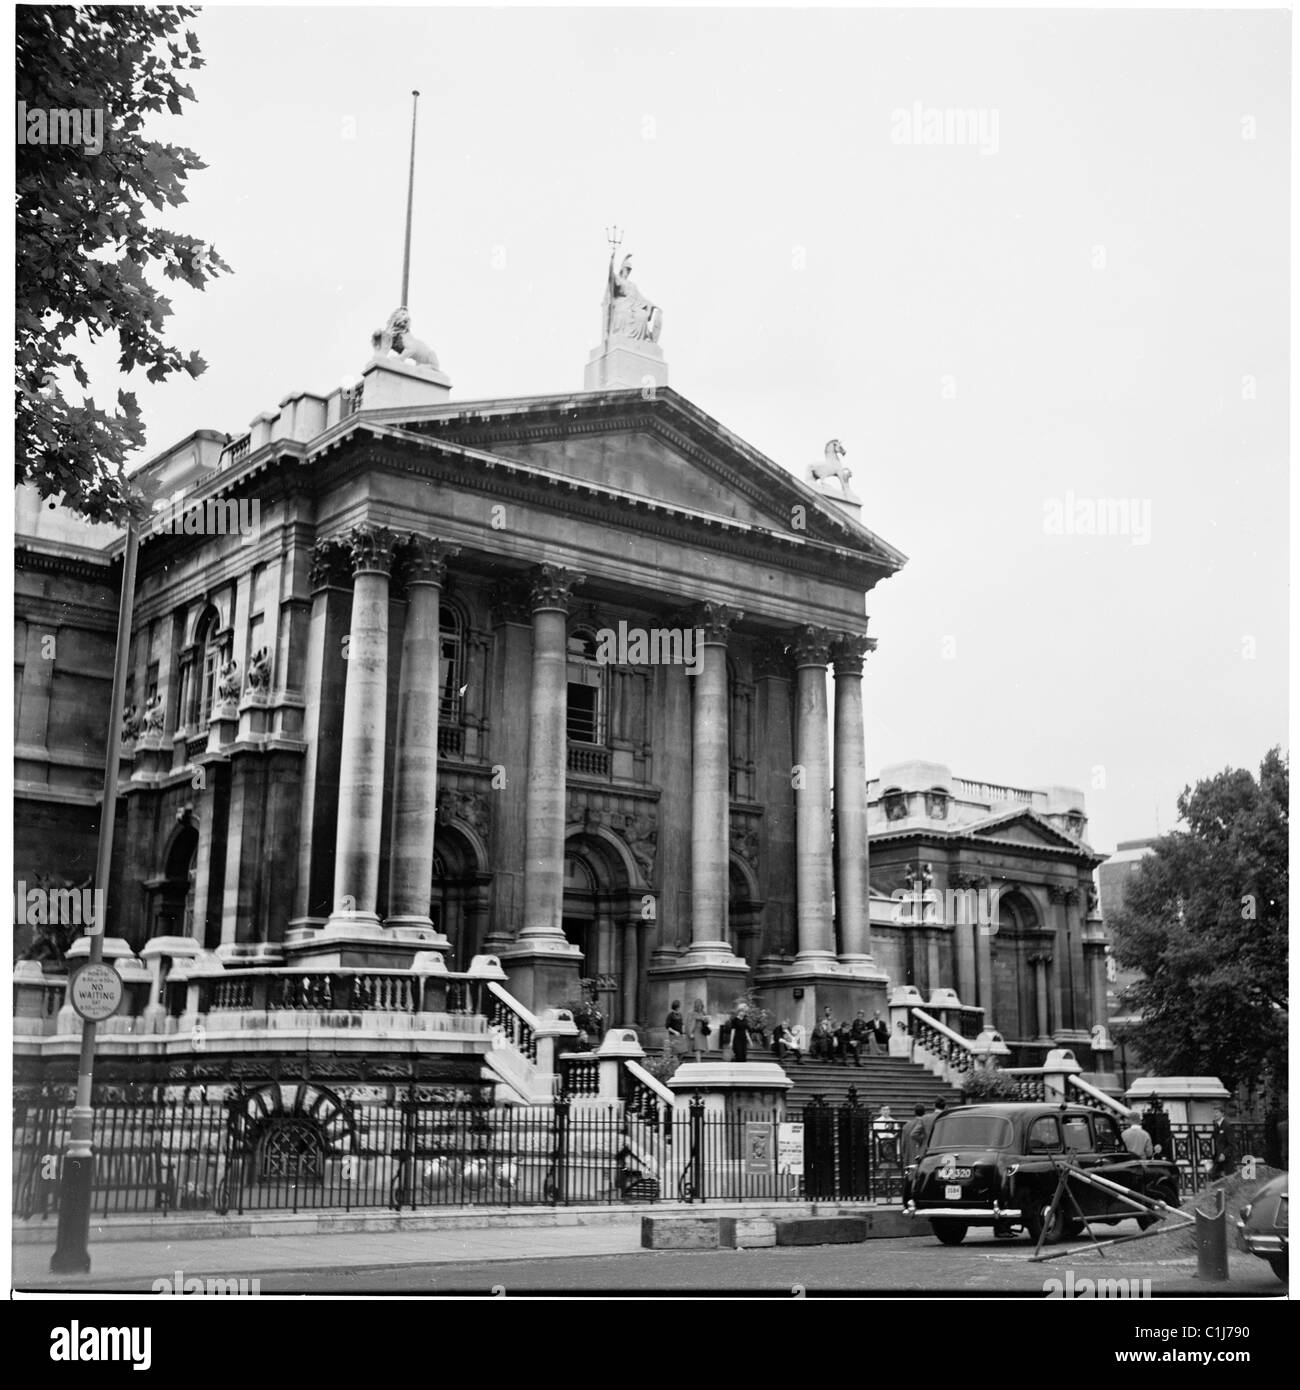 1950er Jahre, Außenansicht der Tate Gallery, früher bekannt als National Gallery of British Art, in Millbank, Pimlico, Westminster London, England, UK. Stockfoto